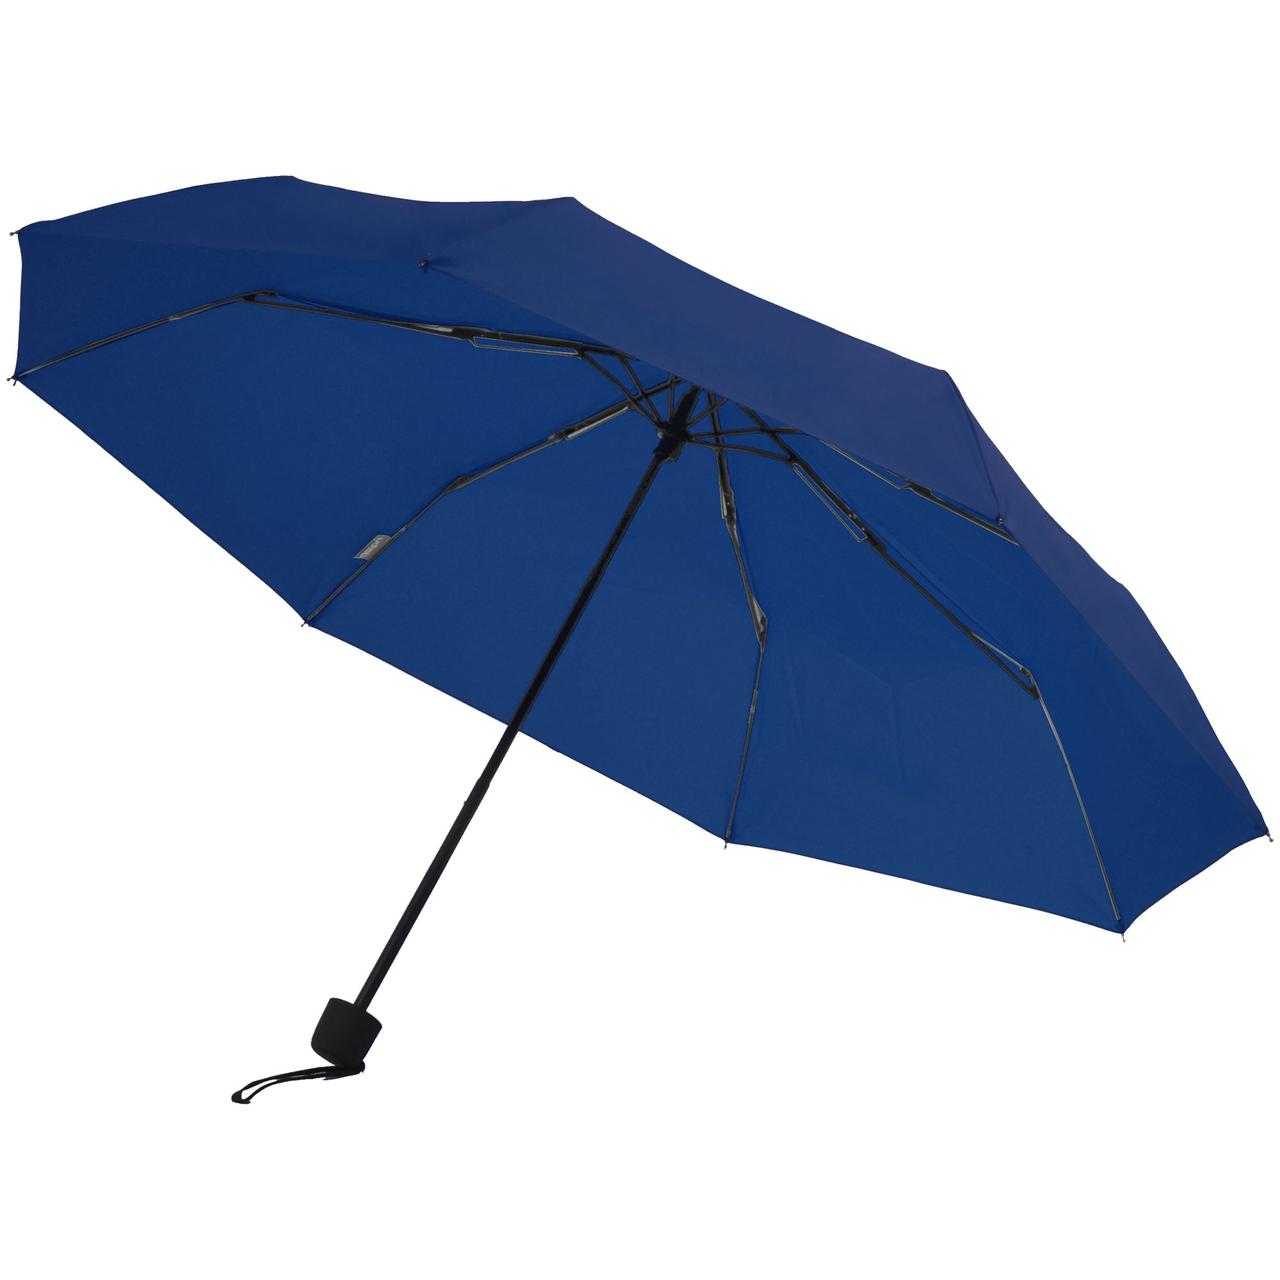 Зонт складной Hit Mini, темно-синий (артикул 11839.40), фото 1